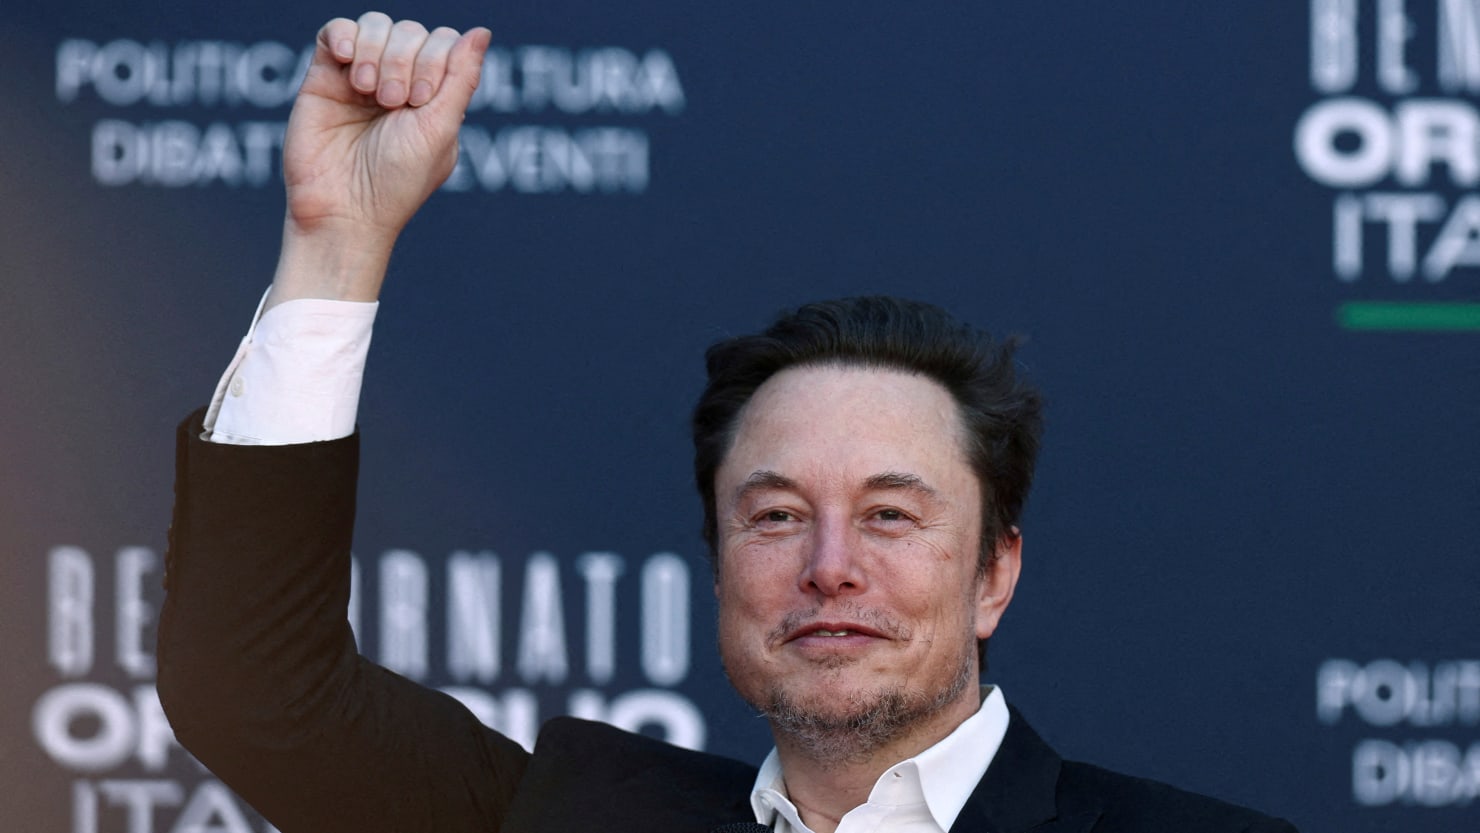 Chính phủ Úc tấn công Musk 'kiêu ngạo' qua các chuyên mục luận tội được phát trực tiếp